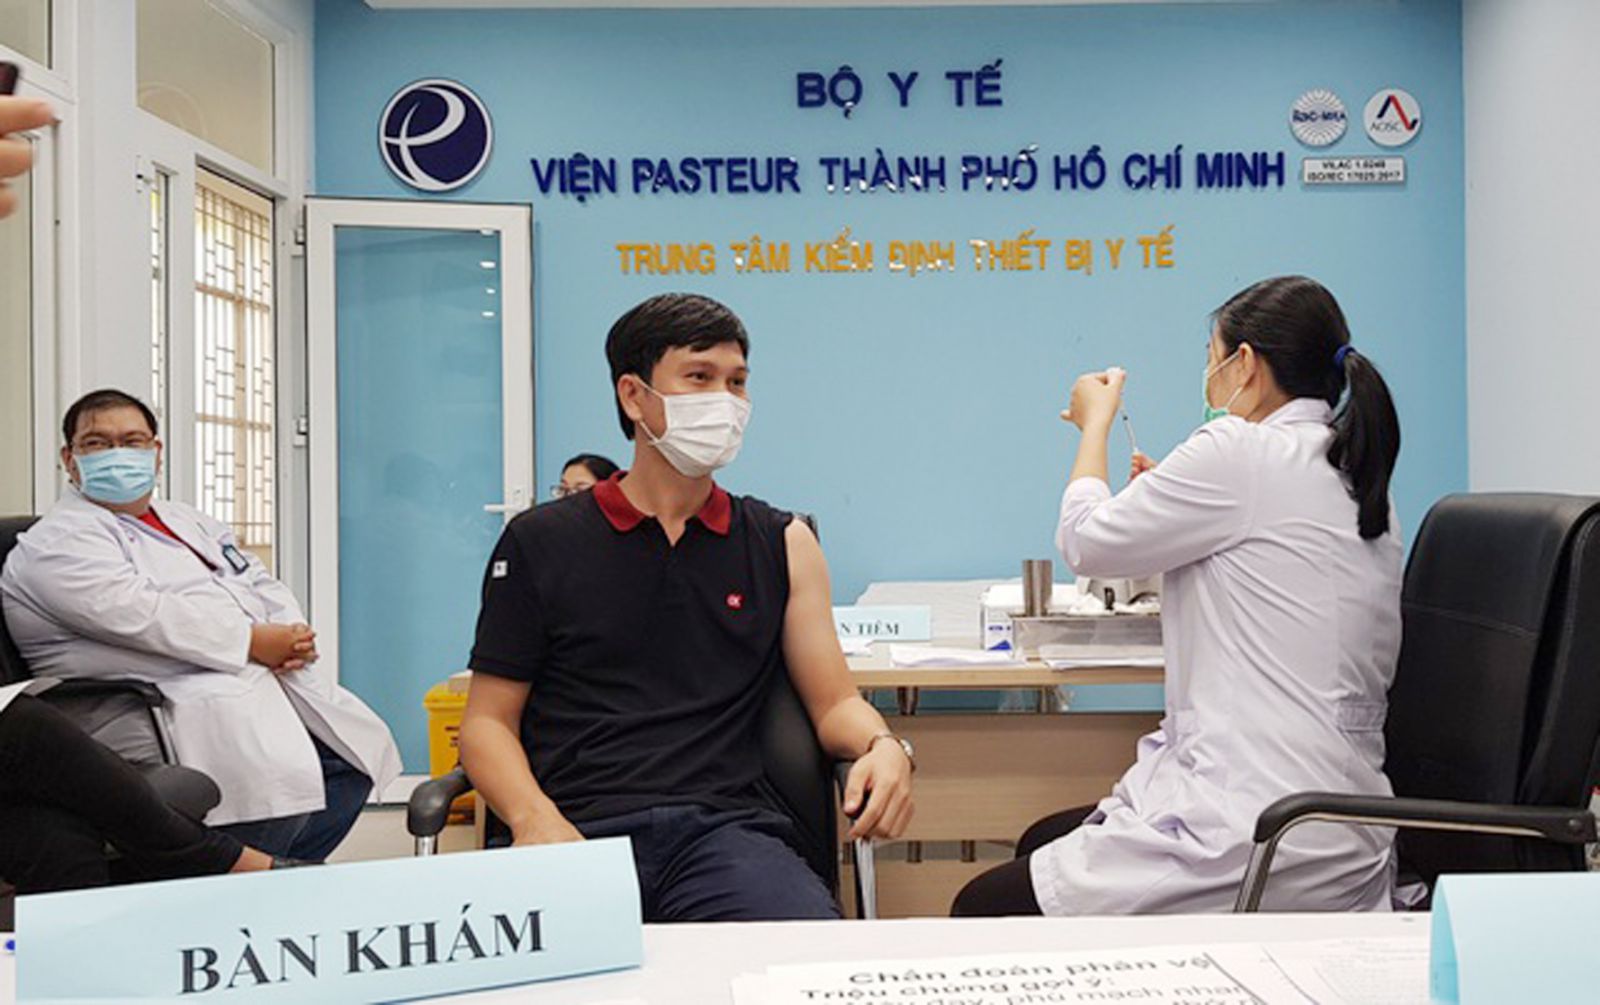 p/Hiện đã có gần 60.000 người thuộc các nhóm ưu tiên trên địa bàn TP HCM được tiêm vắc xin COVID-19. Ảnh: P.Nguyễn